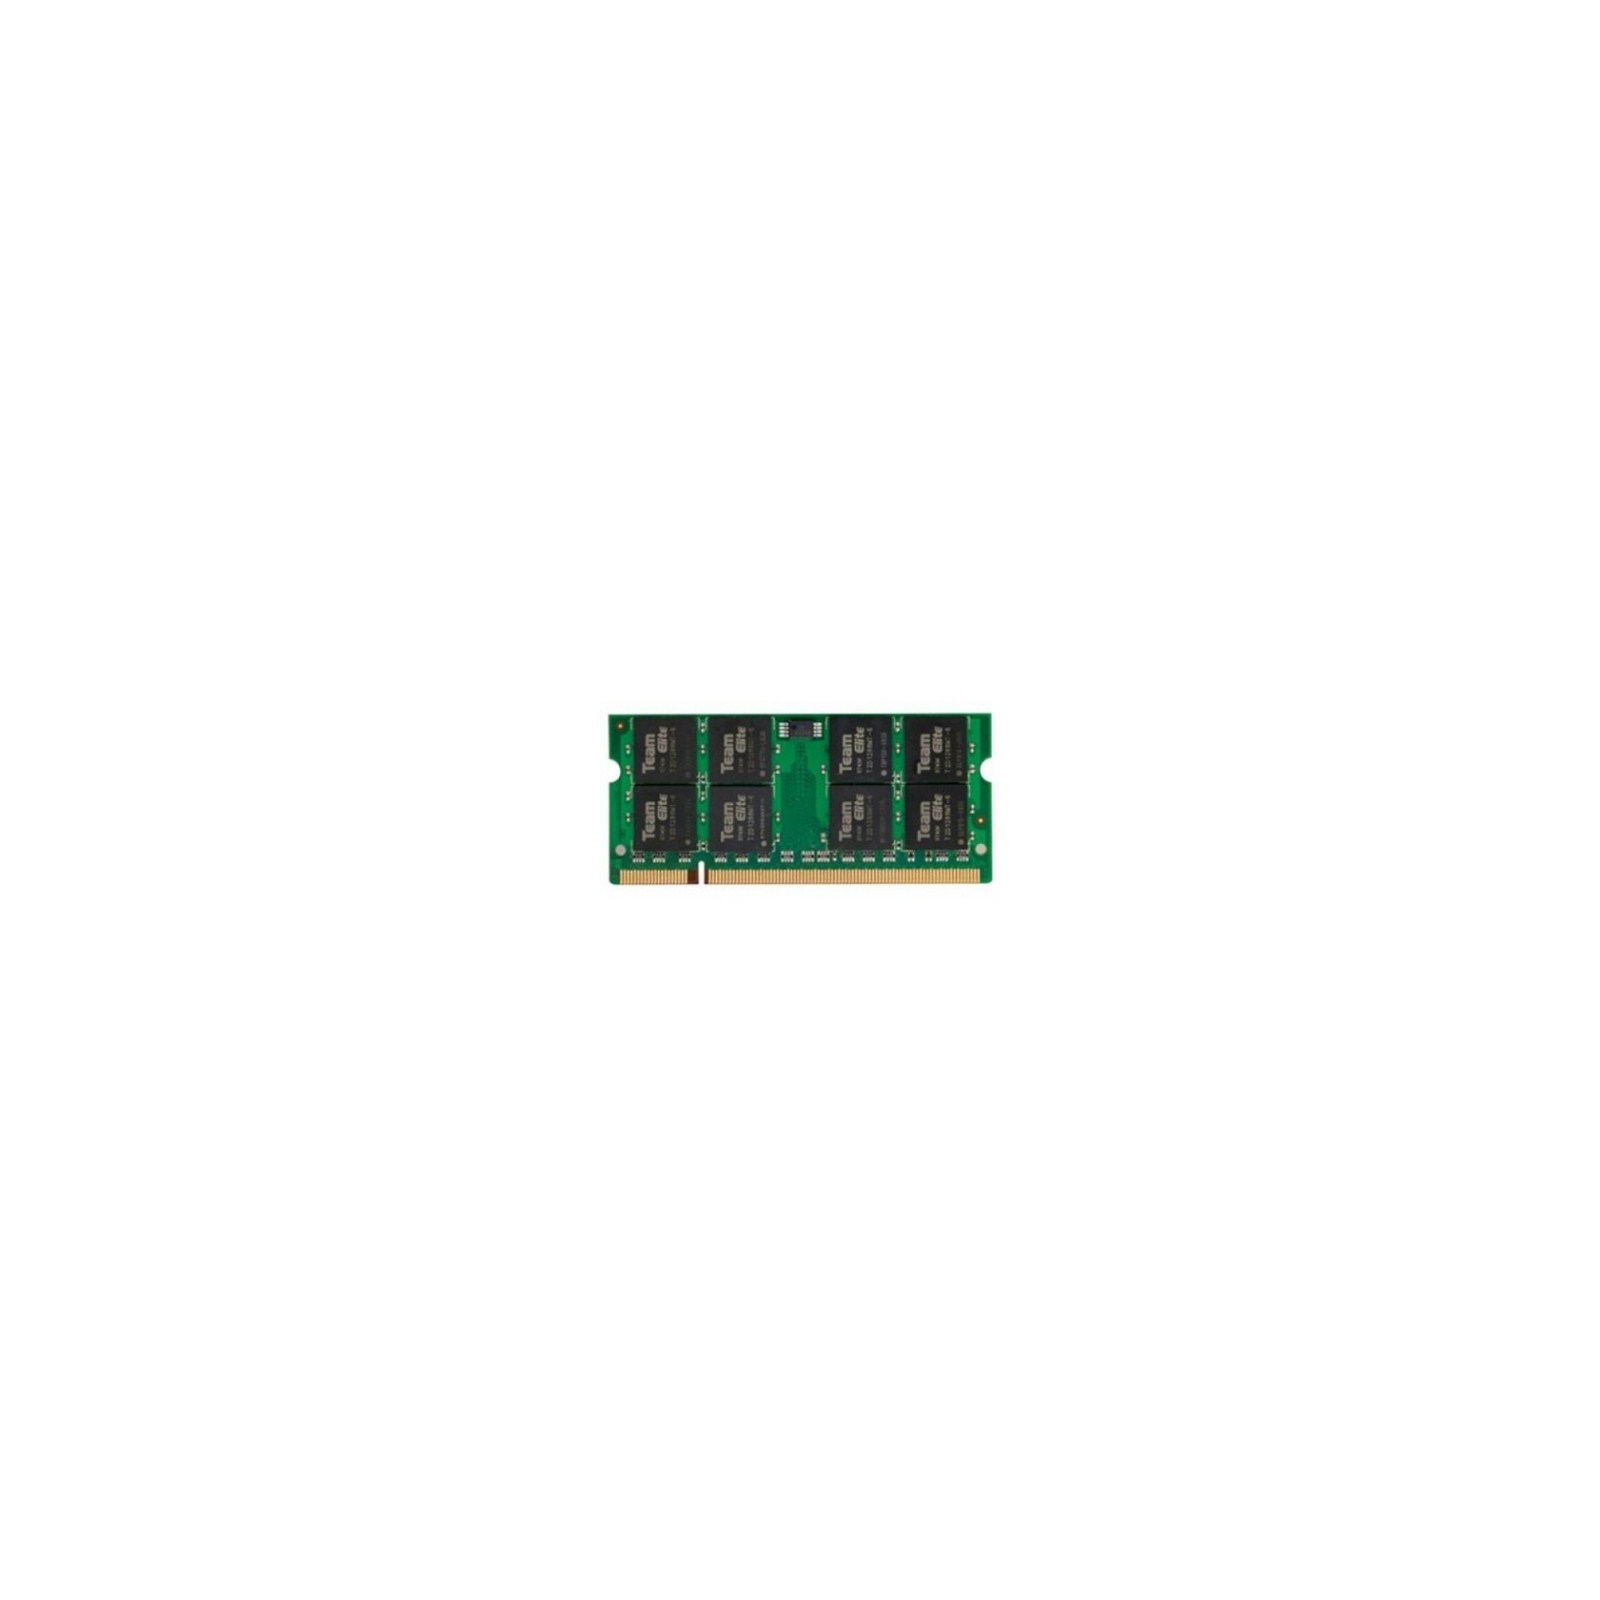 Модуль памяти для ноутбука SoDIMM DDR2 2GB 800 MHz Team (TED22GM800C5-SBK / TED22G800C5-SBK)